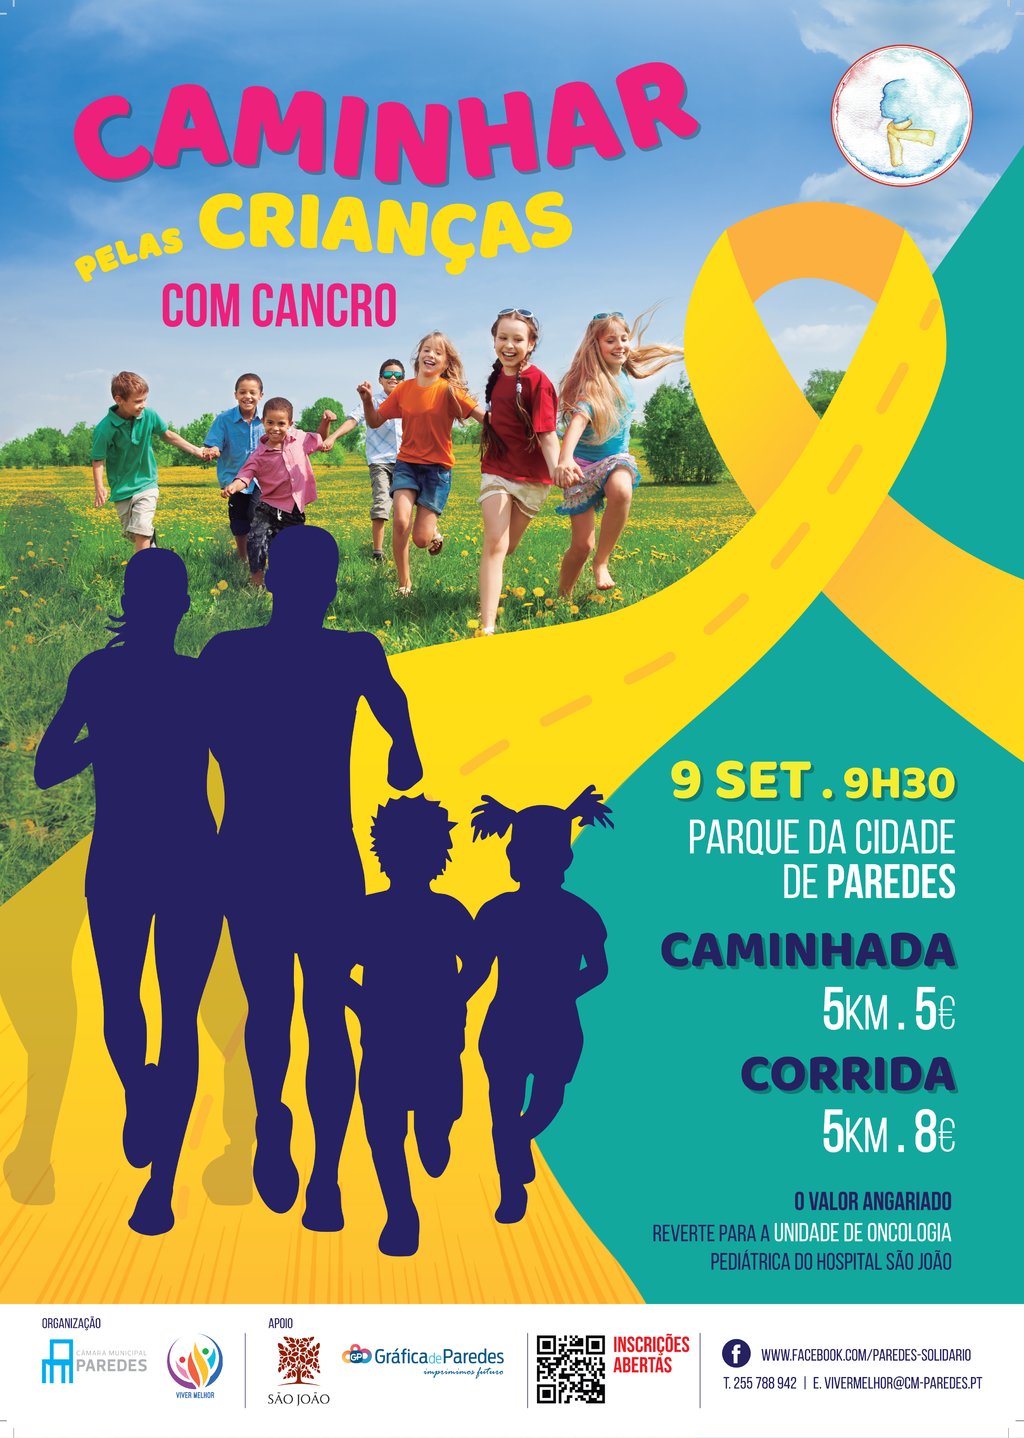 Caminhada solidária pelas crianças com cancro dia 9 de setembro no Parque da Cidade de Paredes 